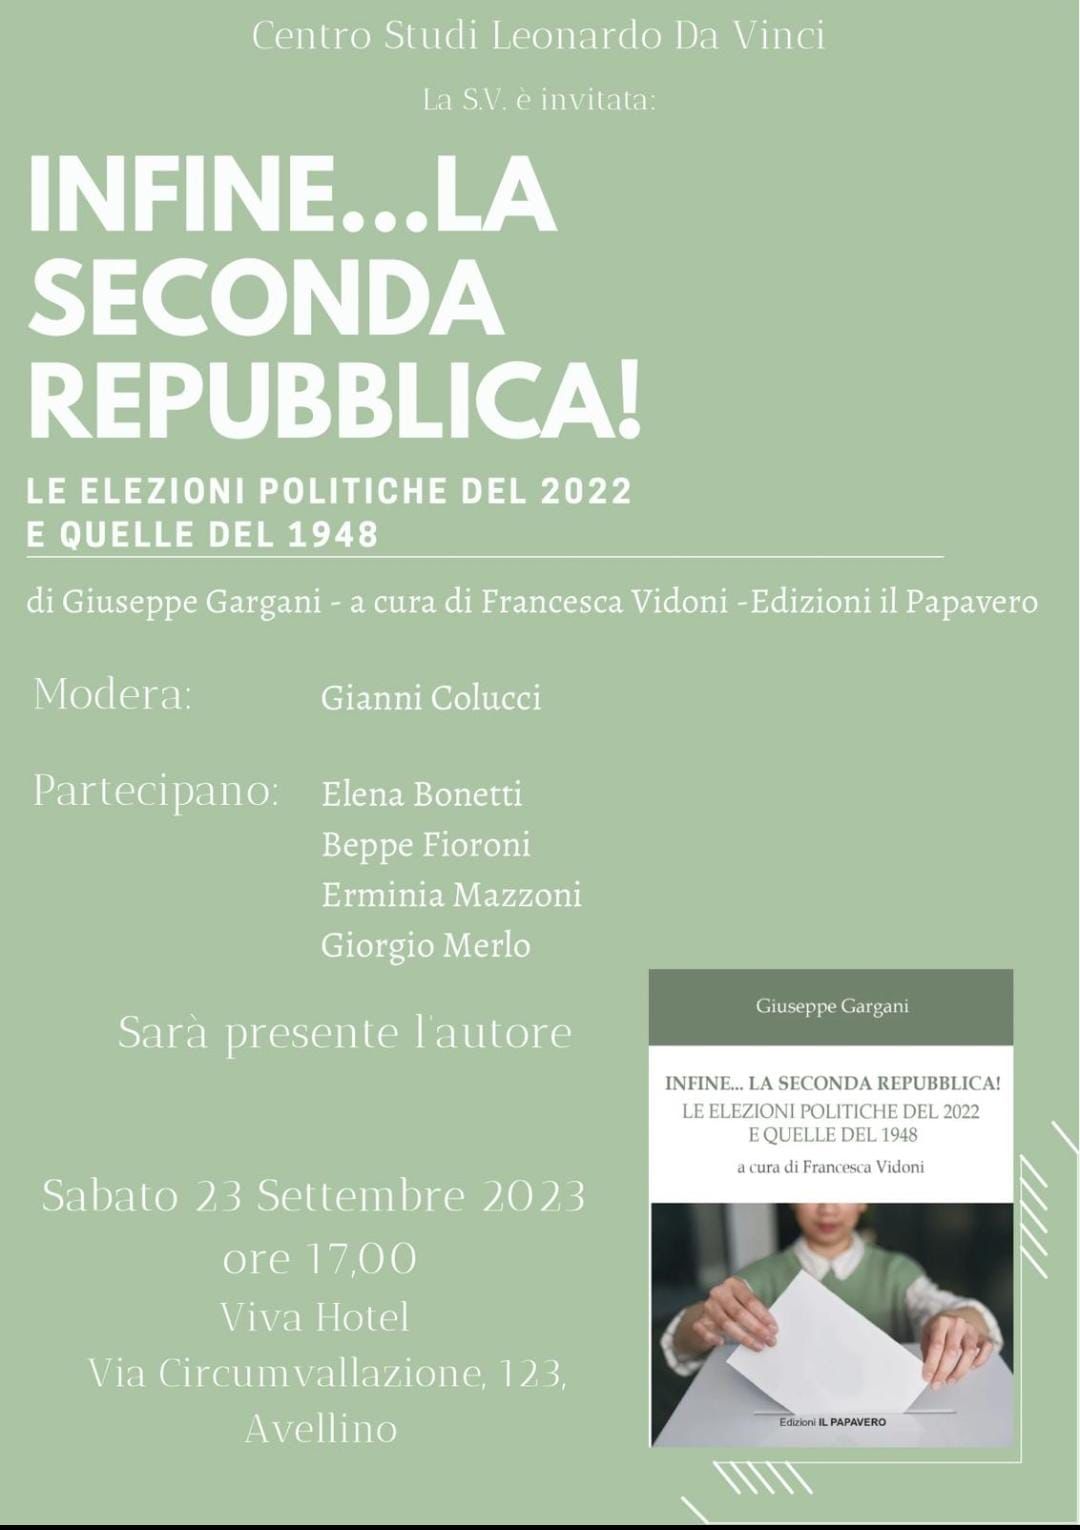 AVELLINO. Infine... la seconda Repubblica, iniziativa del Centro Studi Leonardo Da Vinci al Viva Hotel di Avellino,